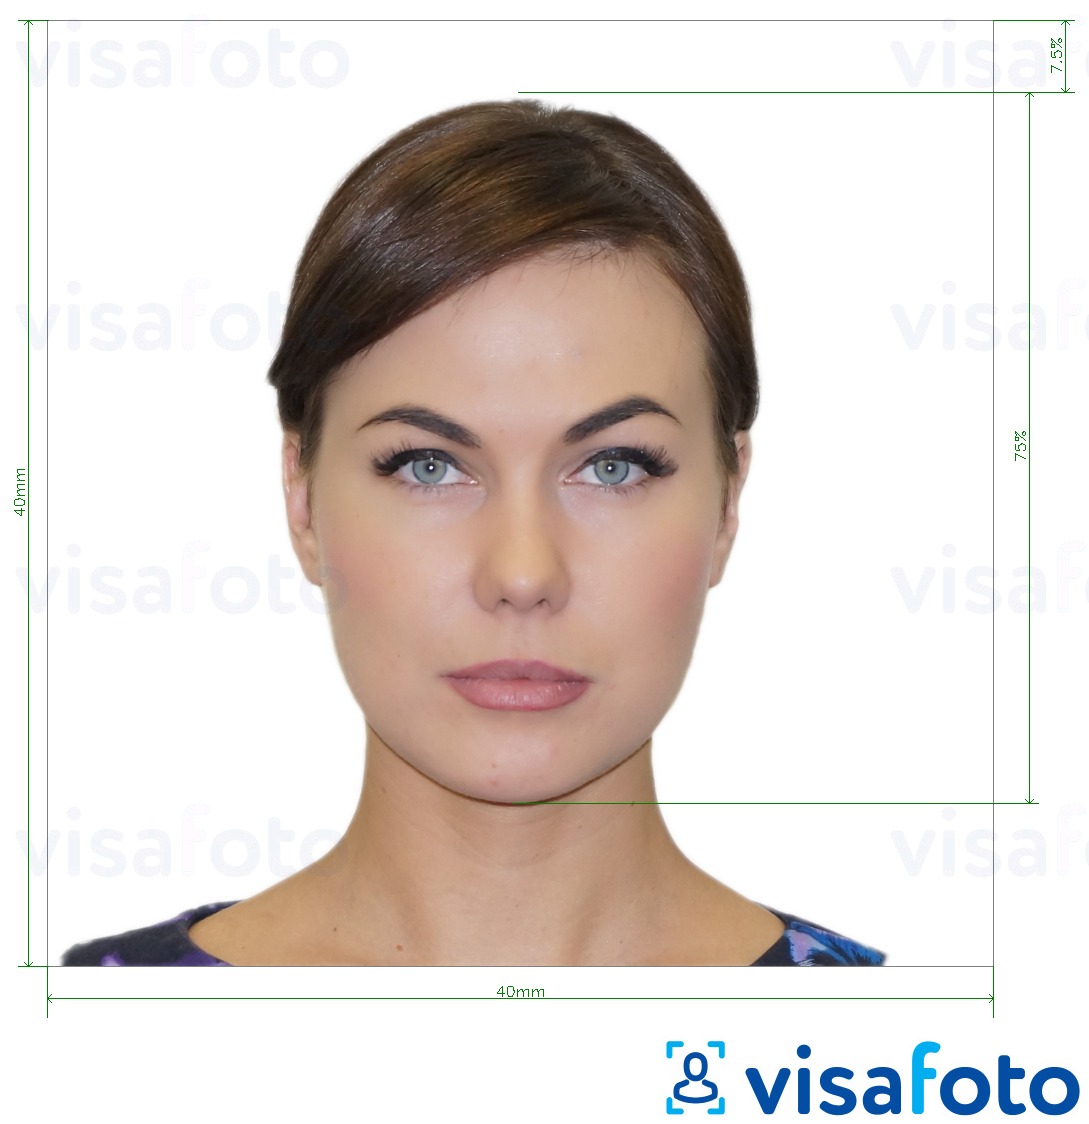 Ejemplo de foto para Pasaporte Italia 40x40 mm (LA consulado) 4x4 cm con la especificación del tamaño exacto